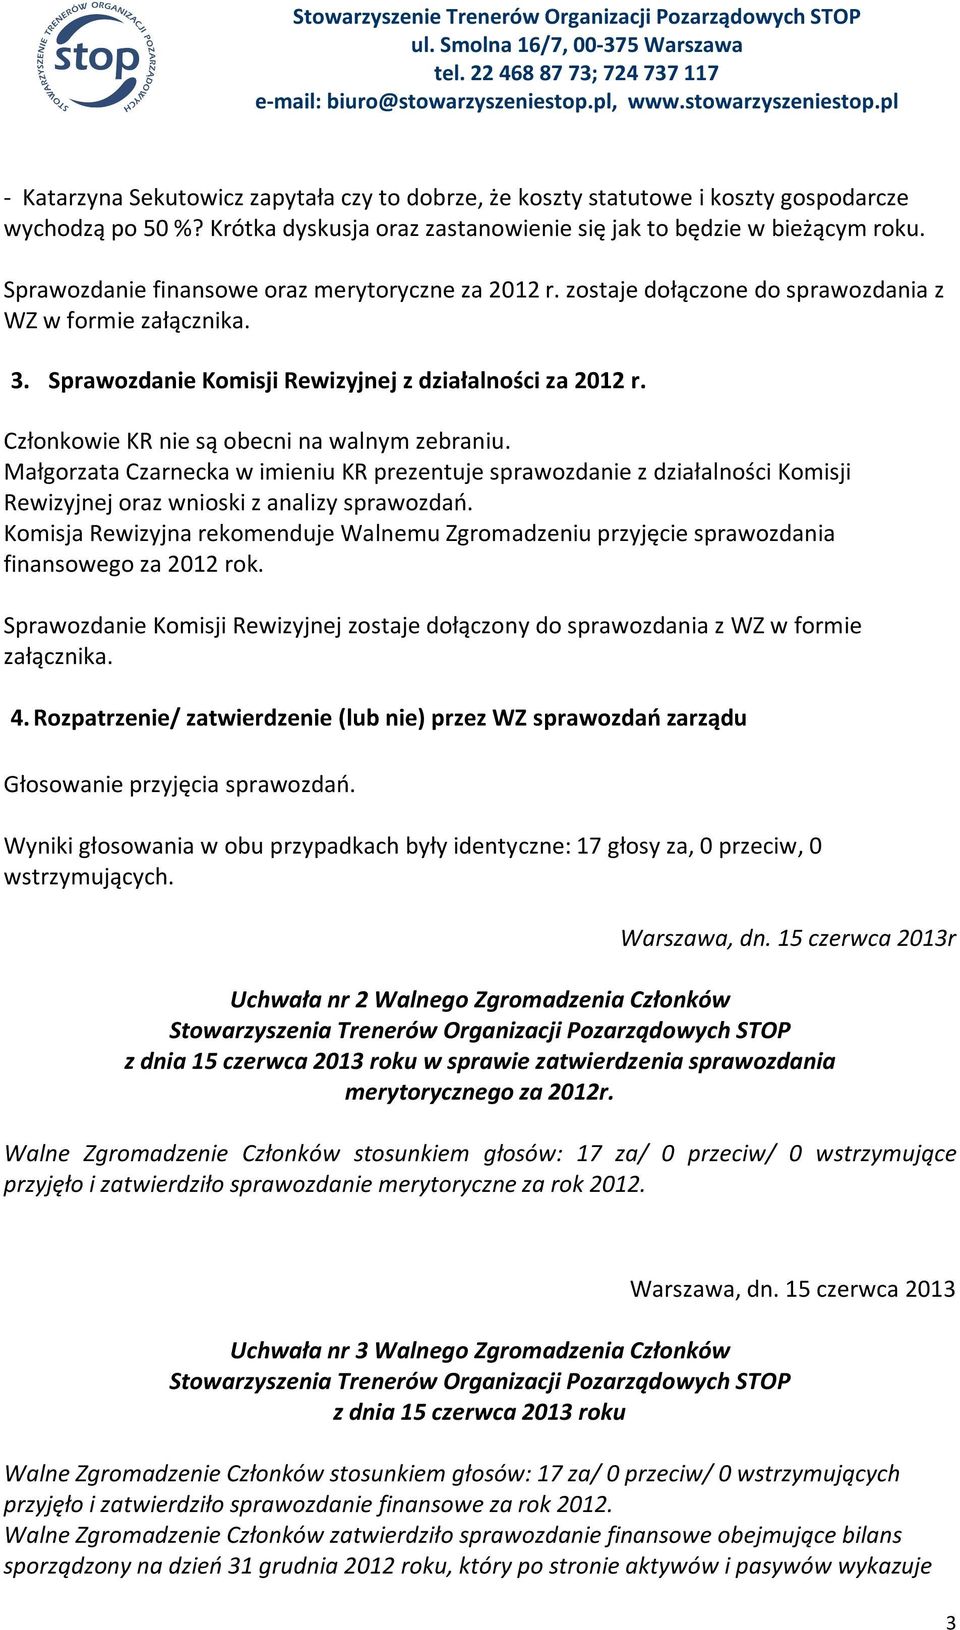 Małgorzata Czarnecka w imieniu KR prezentuje sprawozdanie z działalności Komisji Rewizyjnej oraz wnioski z analizy sprawozdań.